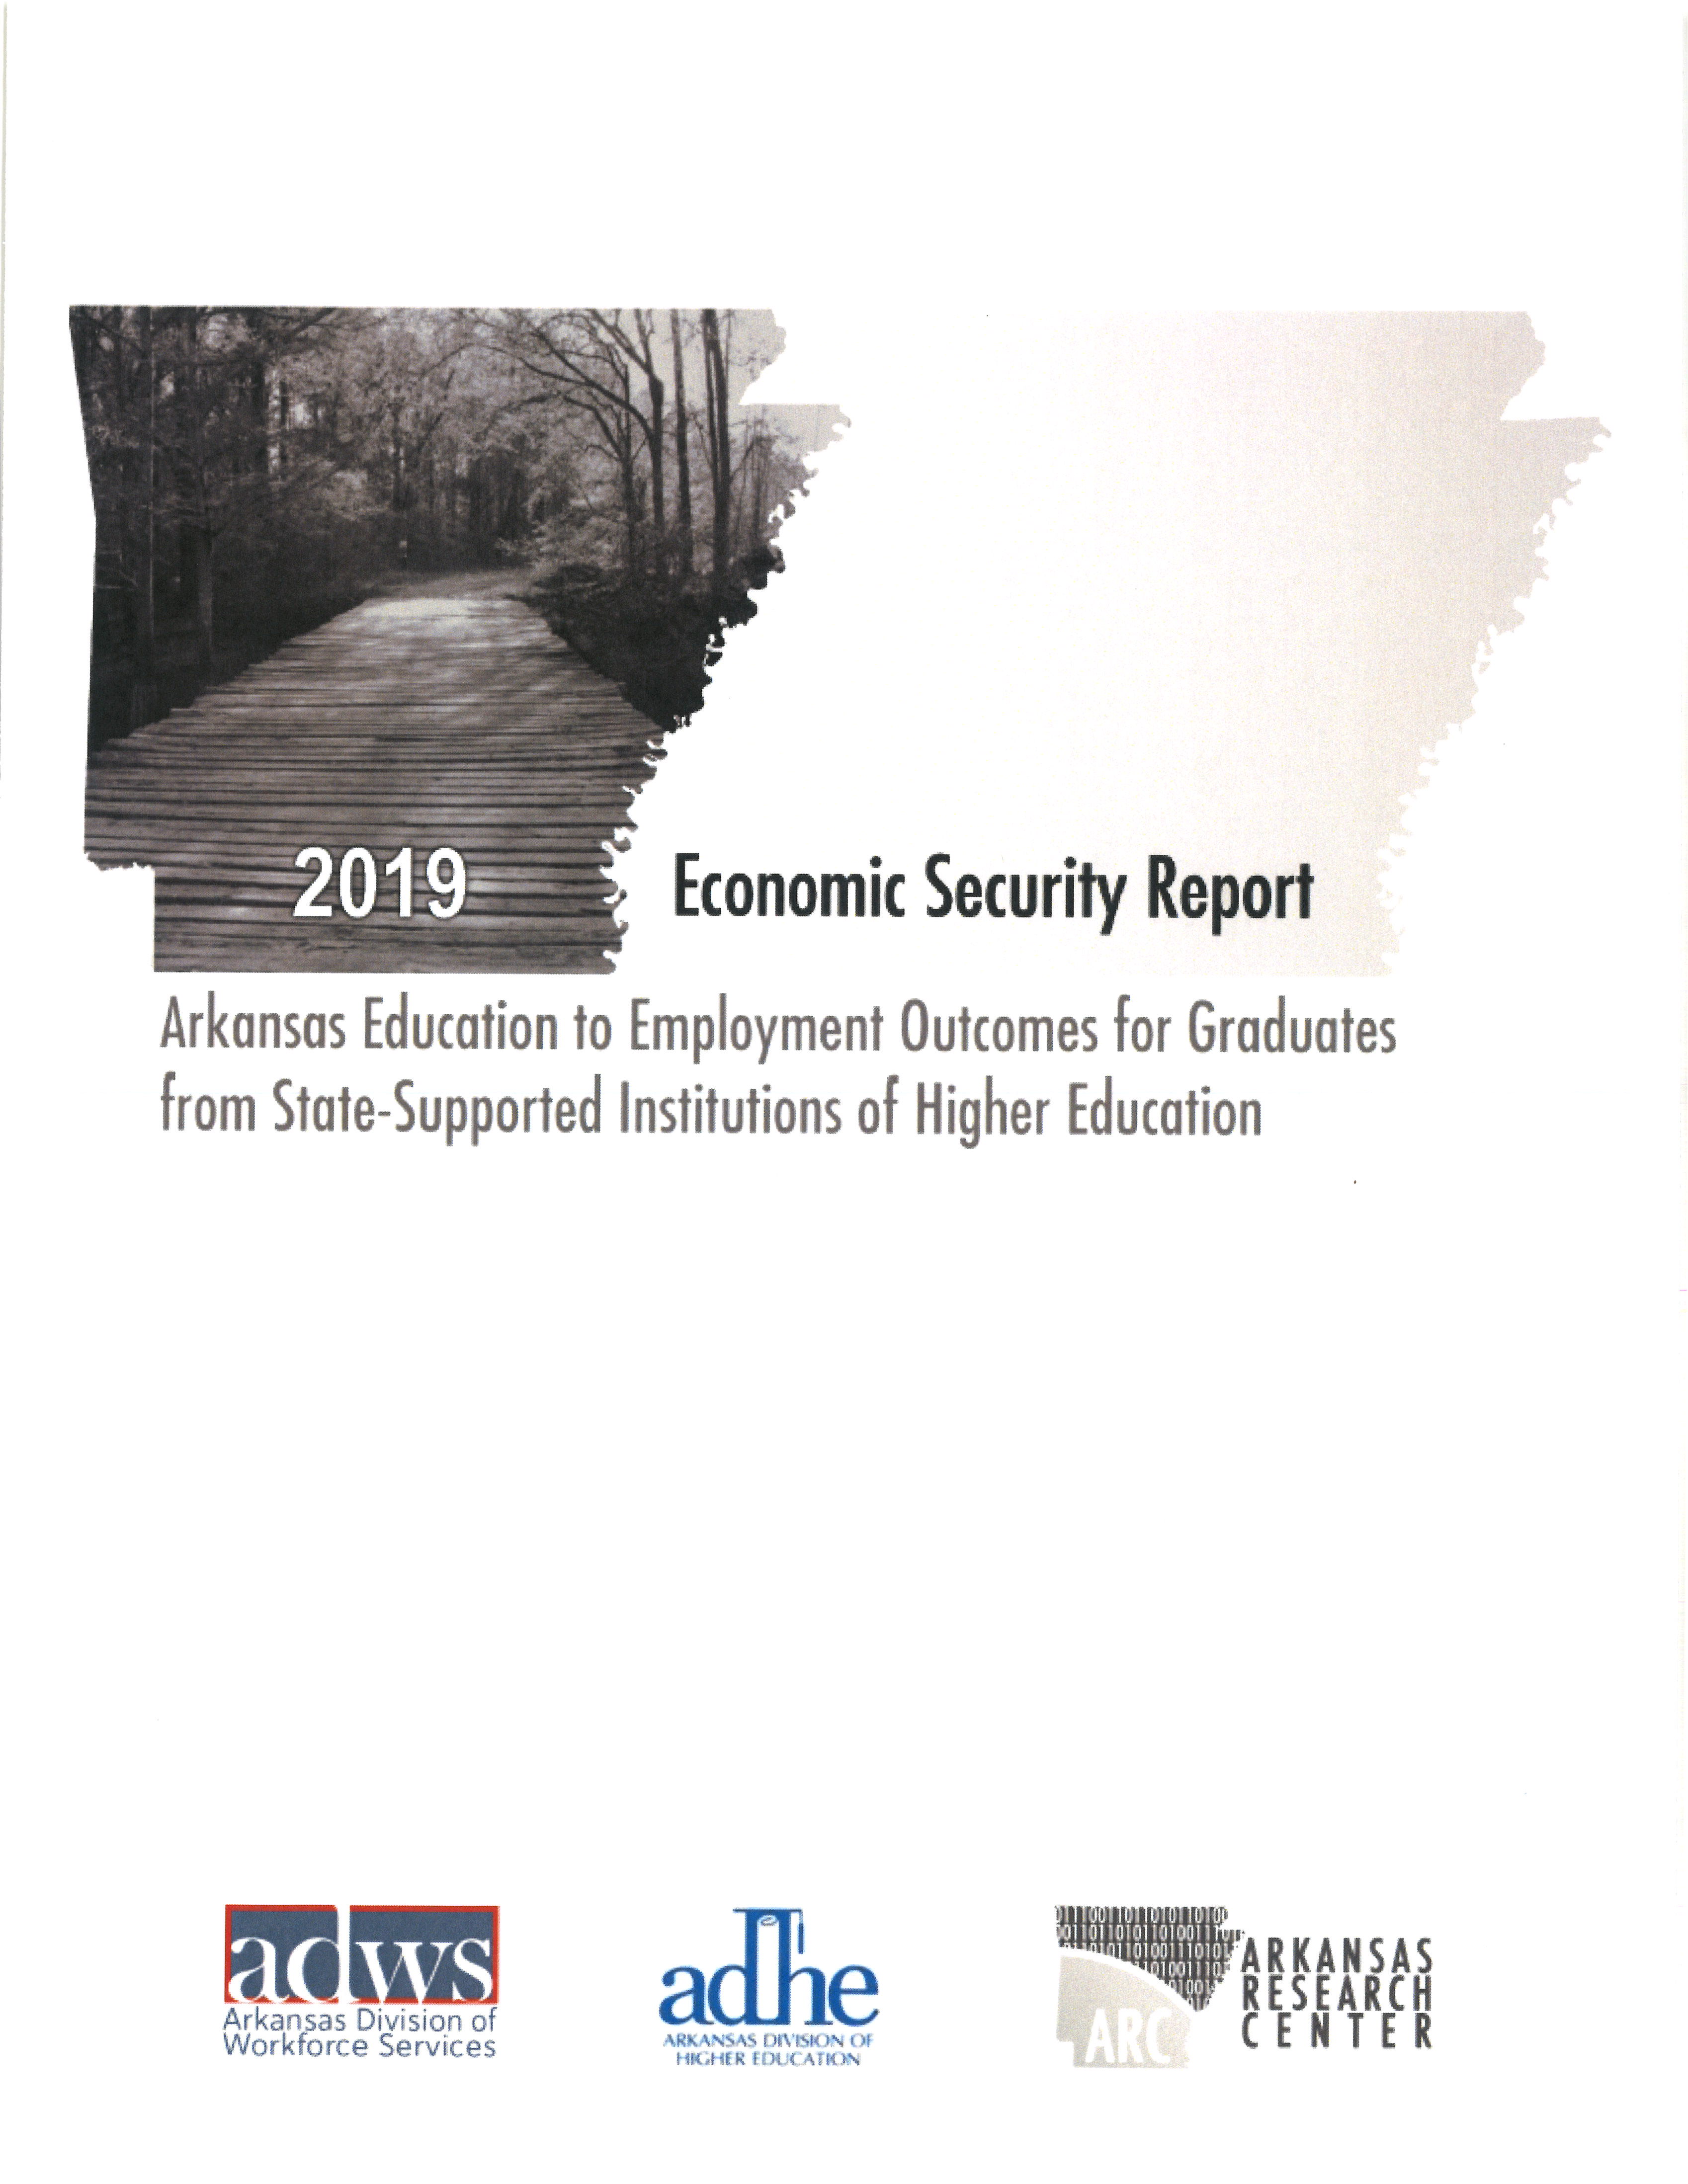 Economic Security Report (2019) summary